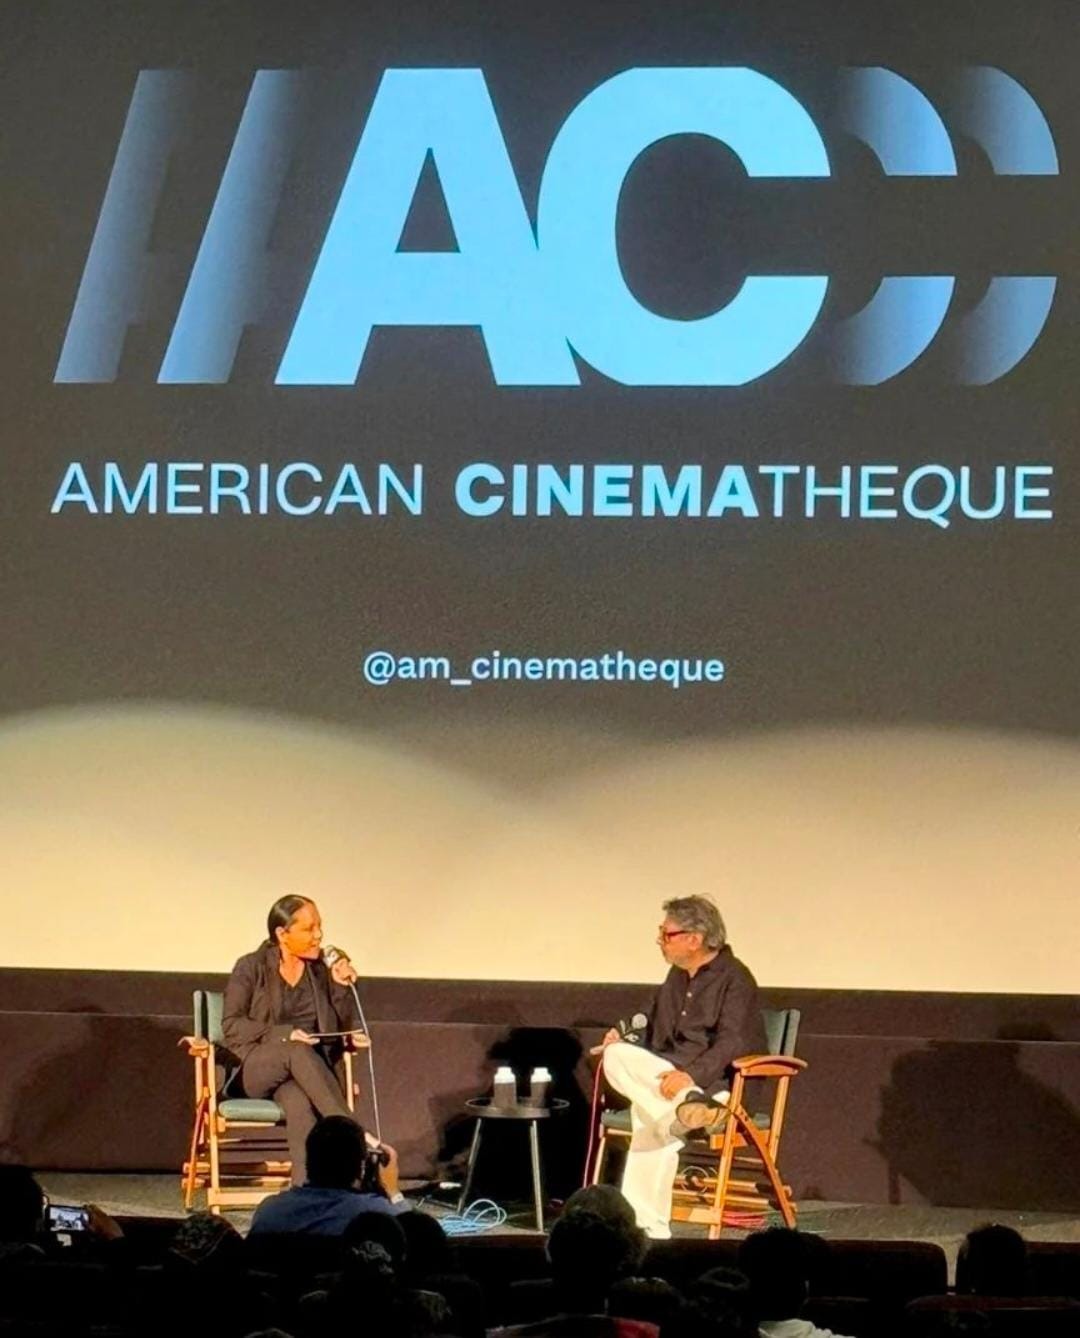 लॉस एंजेलिस के एयरो थिएटर में चला संजय लीला भंसाली की फिल्म "गंगुबाई काठियावाड़ी" का जादू, दर्शक हुए प्रभावित 45941